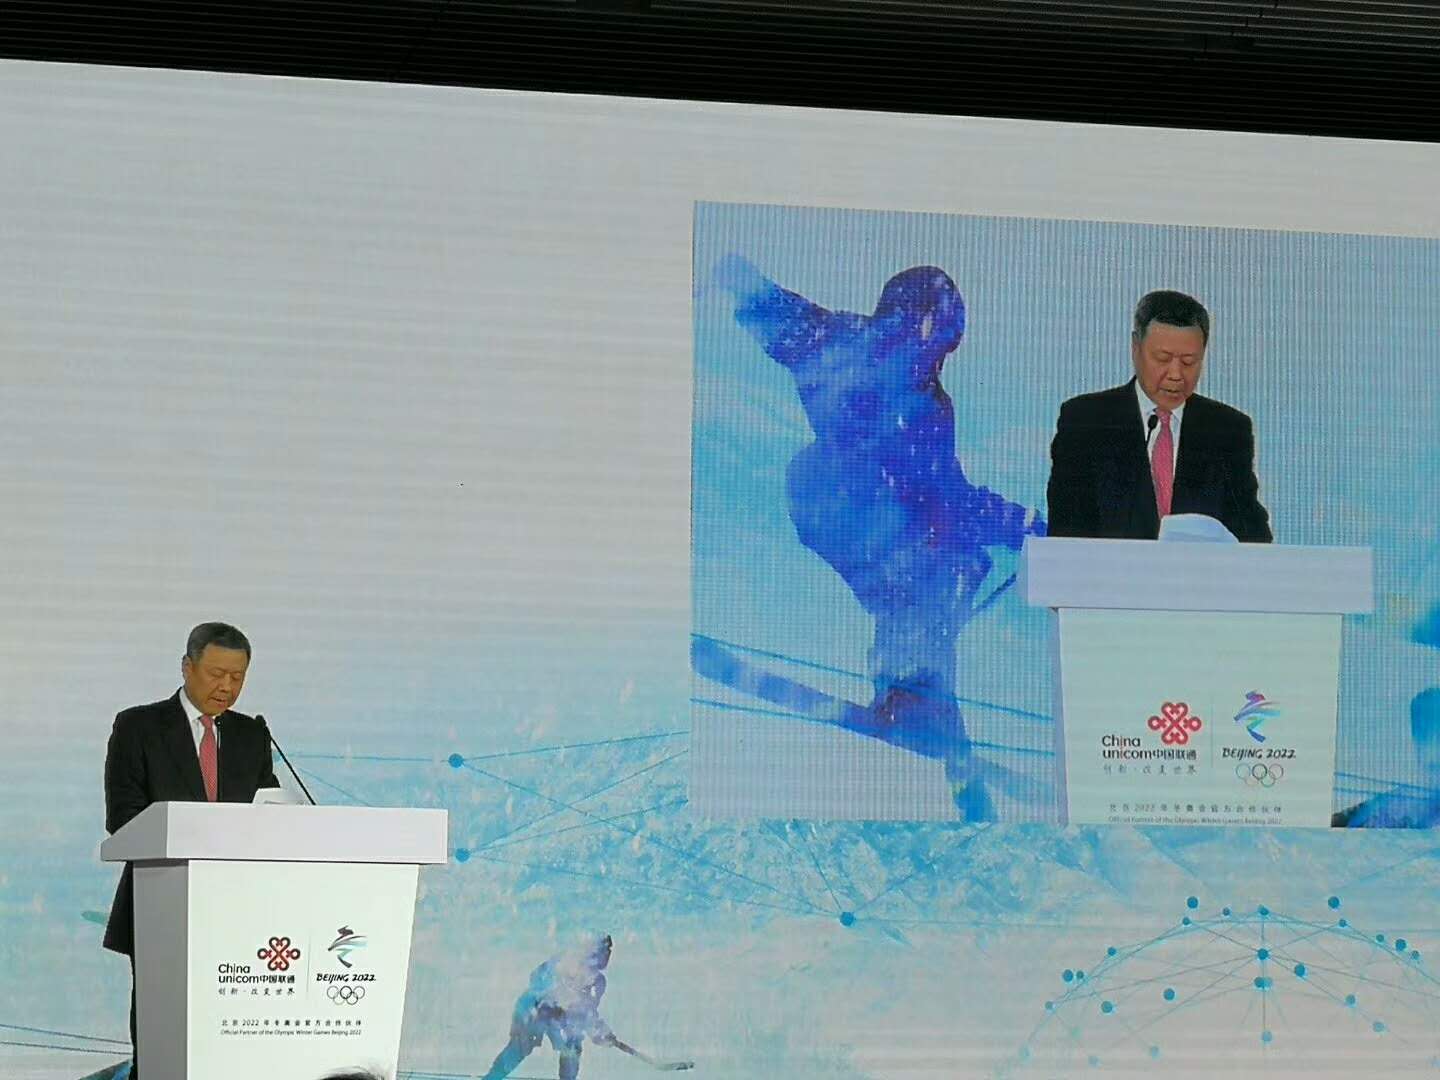 【快讯】中国联通成为北京冬奥会官方通信伙伴